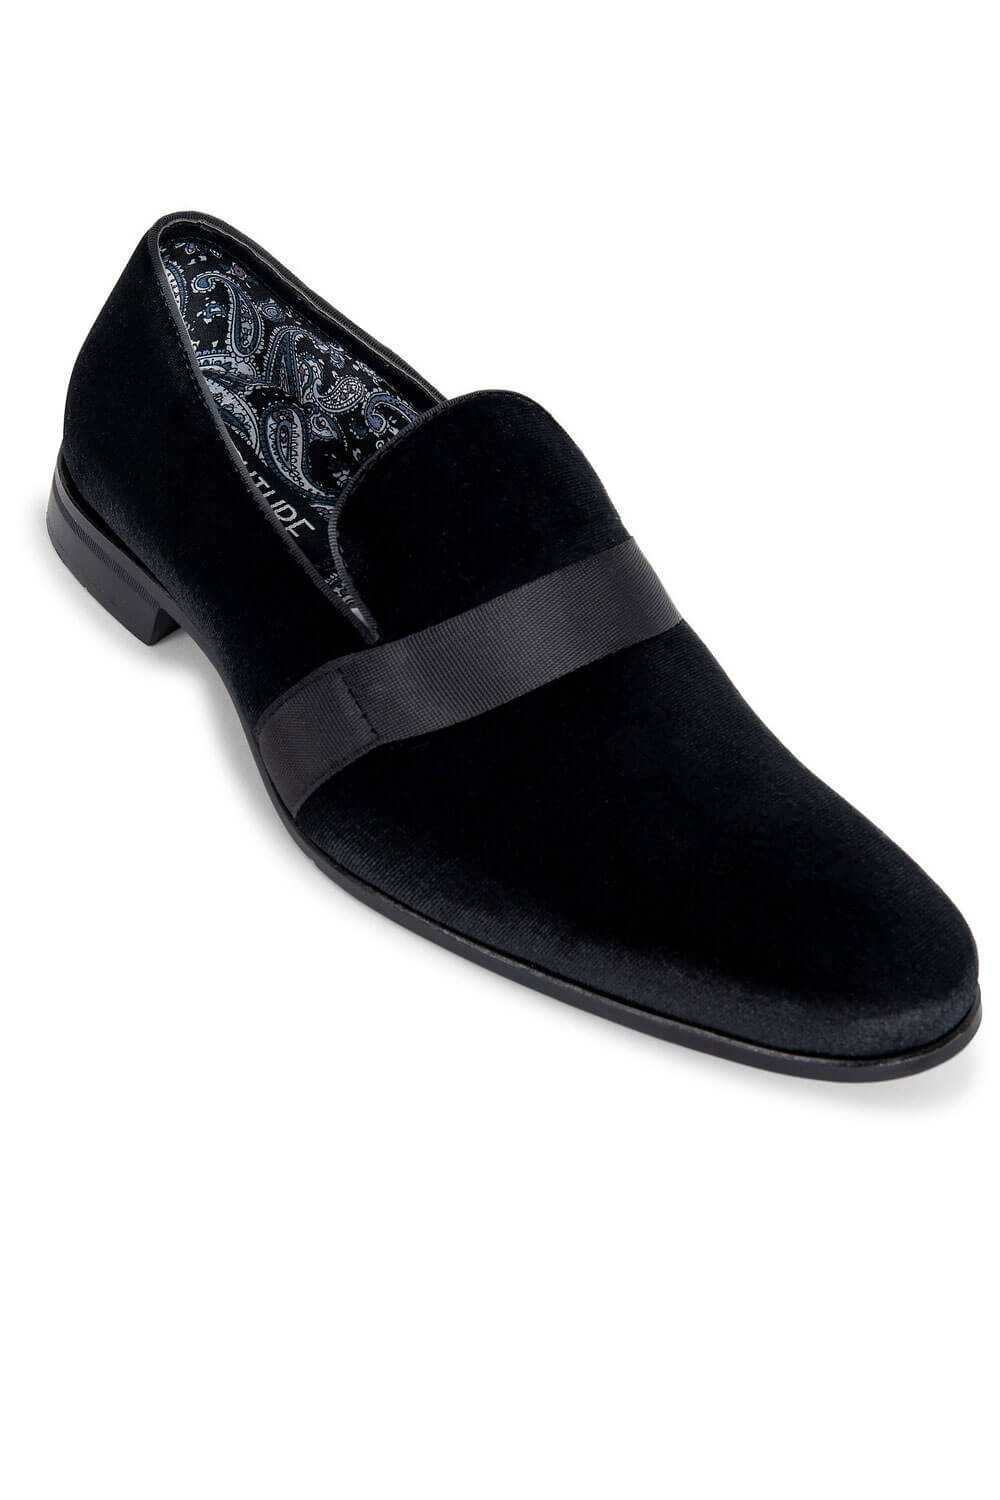 Corky Babalu Shoe in Black Velvet – Paige Lynn & Co.